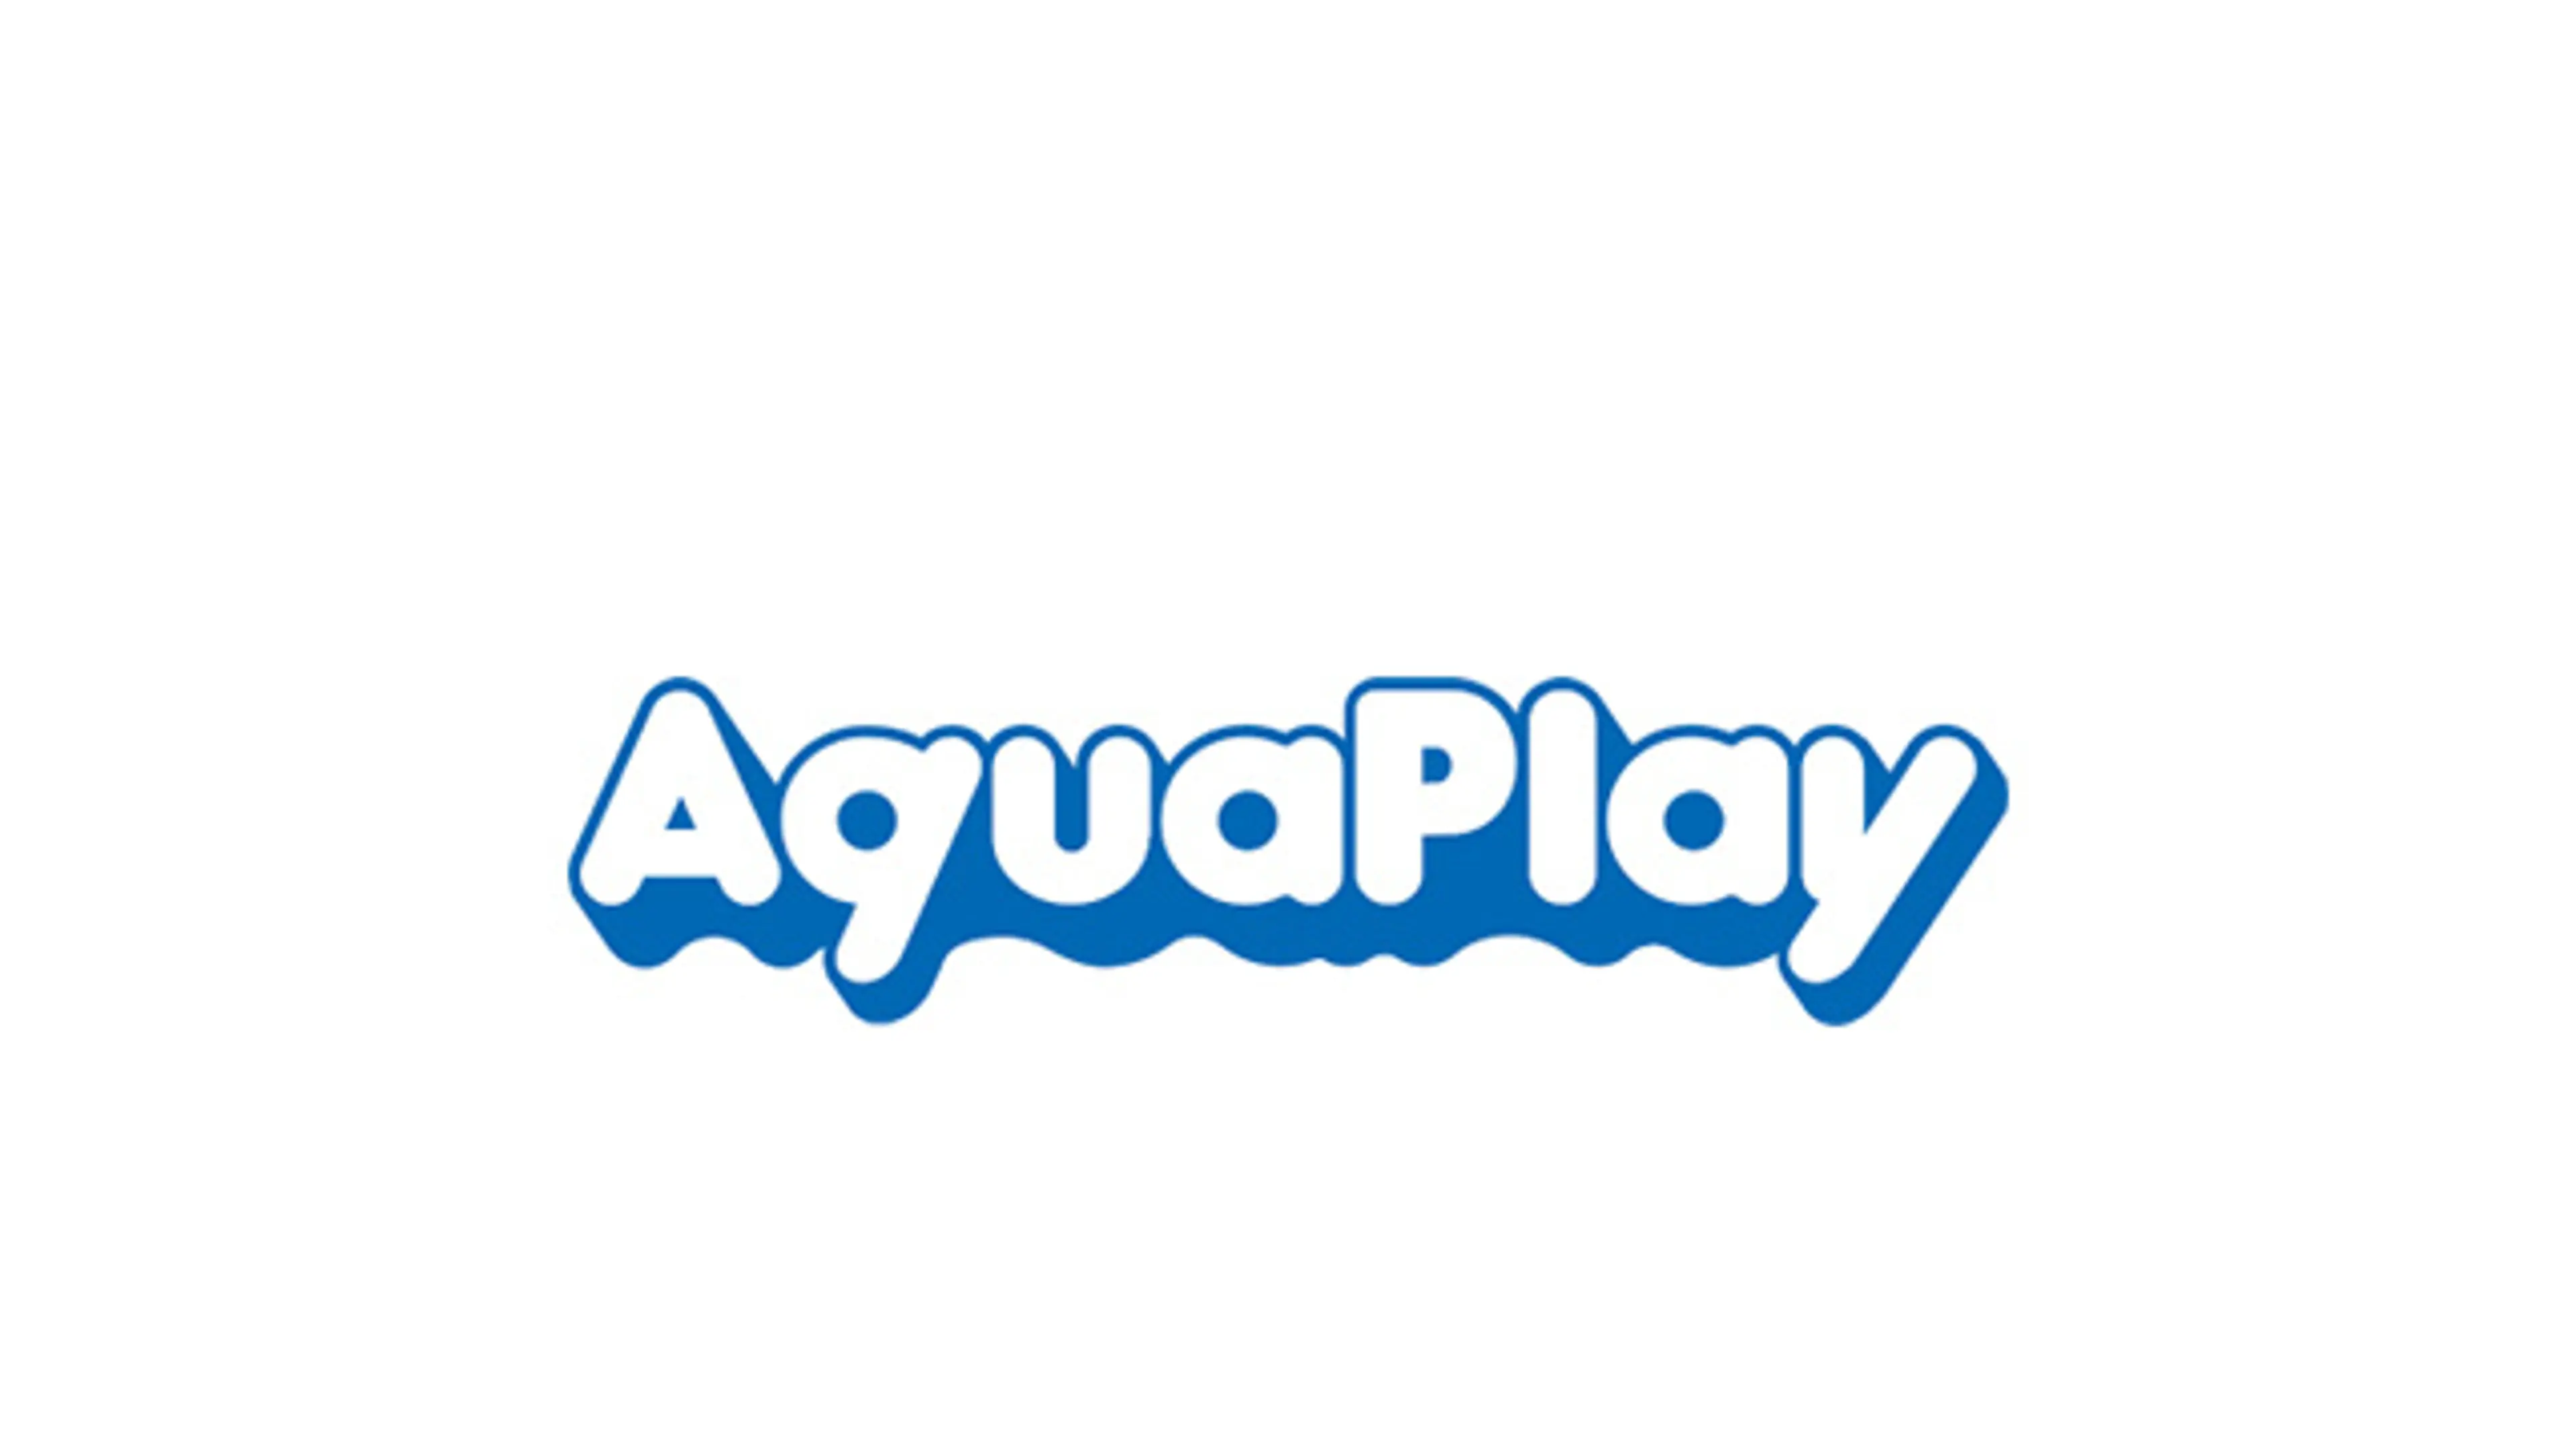 Aquaplay vattenleksaker - köp hos Sprell